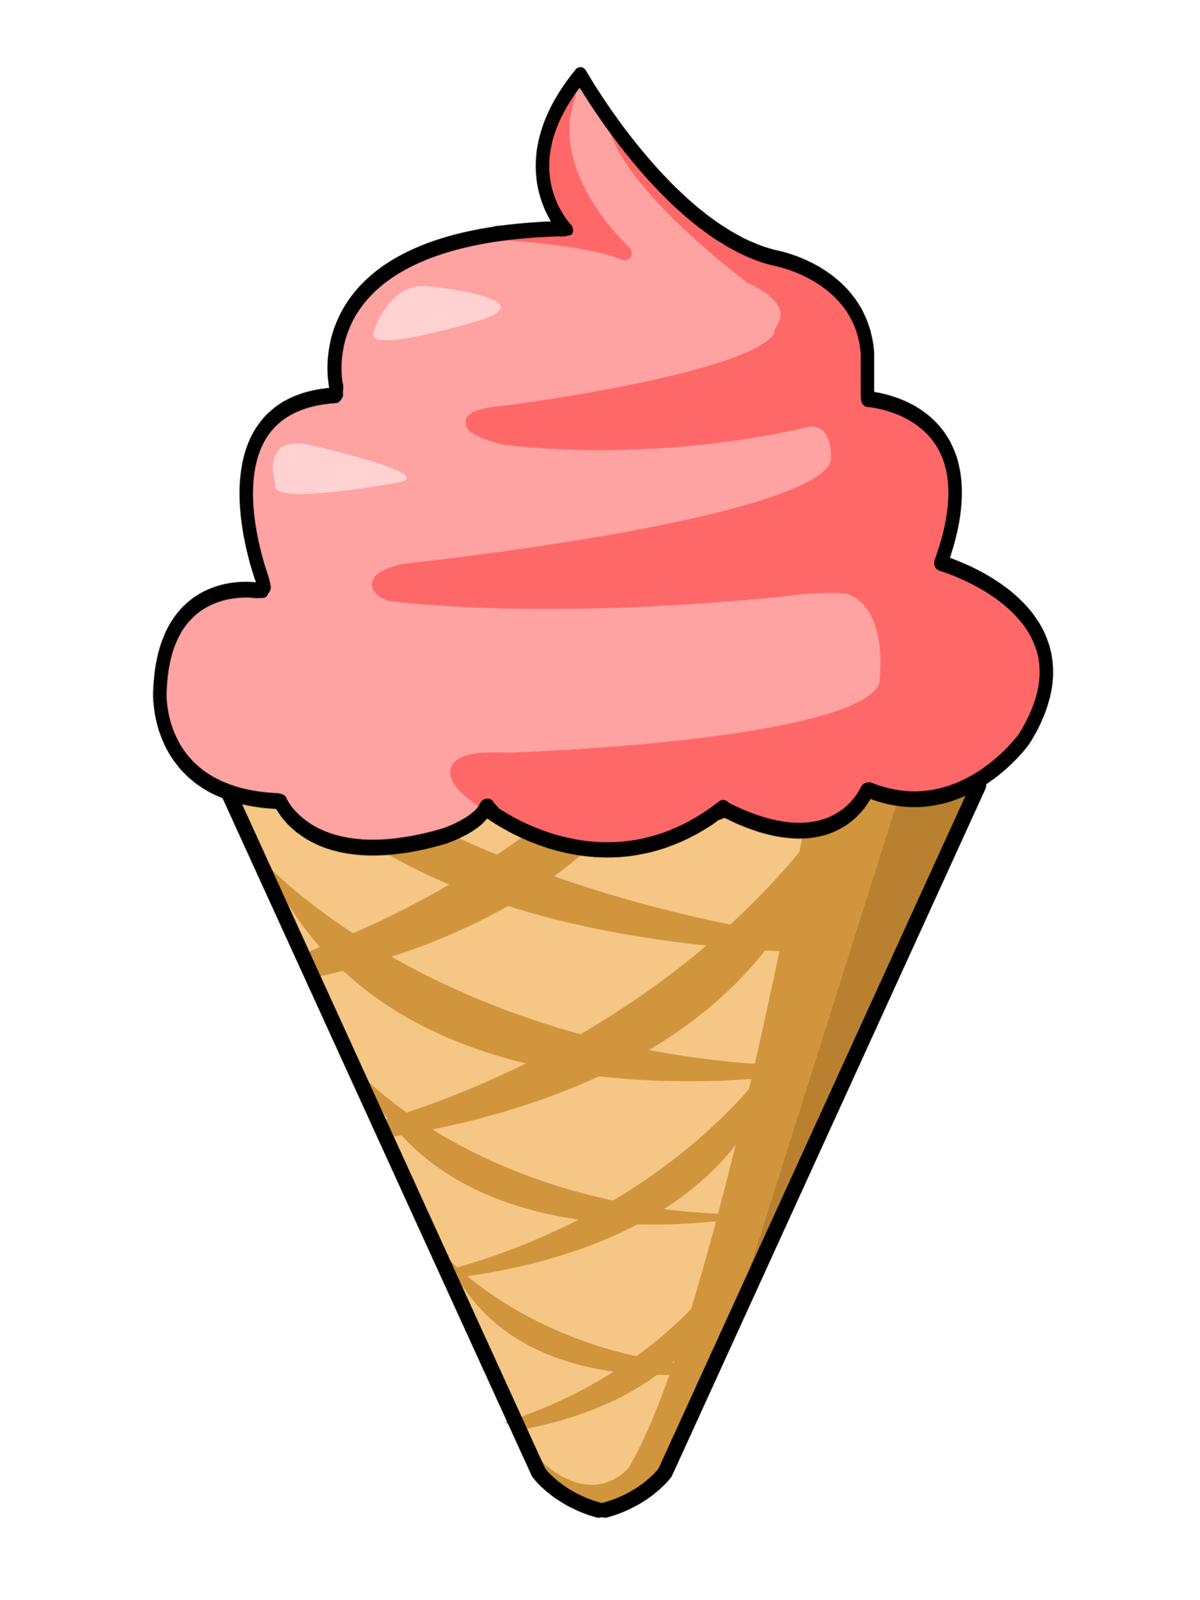 Ice cream cone ice cream